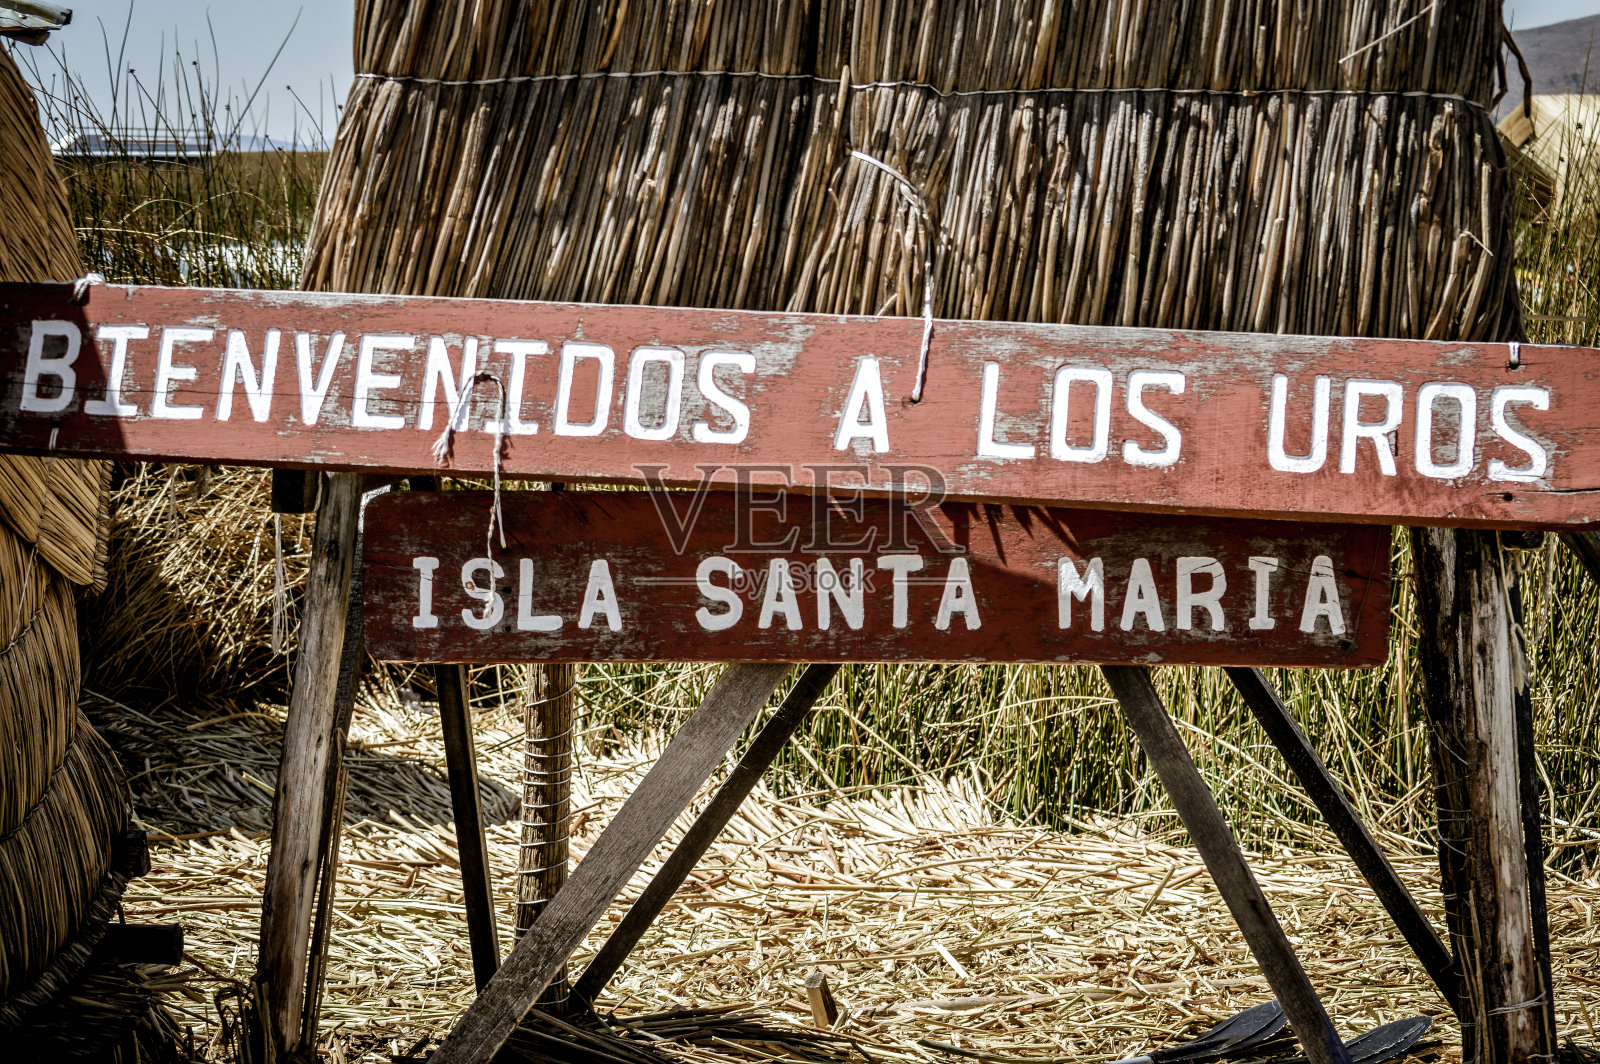 秘鲁的喀喀湖上的乌鲁斯群岛照片摄影图片